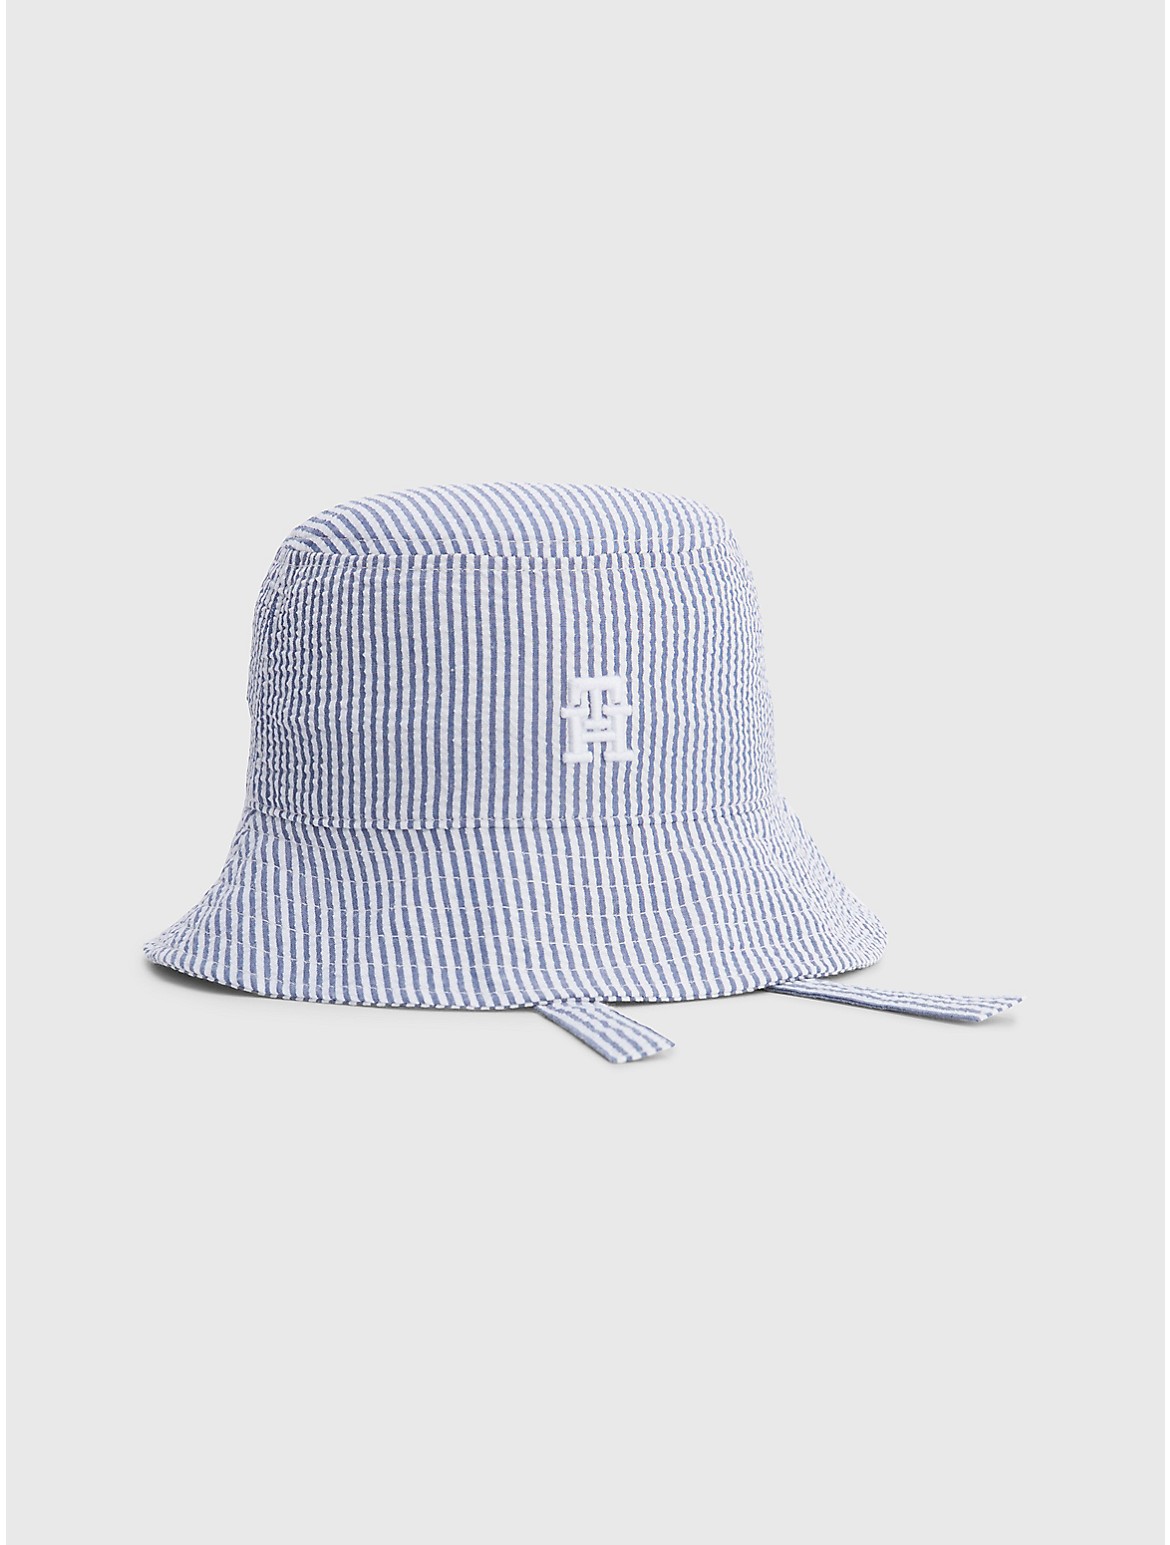 Tommy Hilfiger Kids' Stripe Bucket Hat with Tie Straps - Blue - S-M